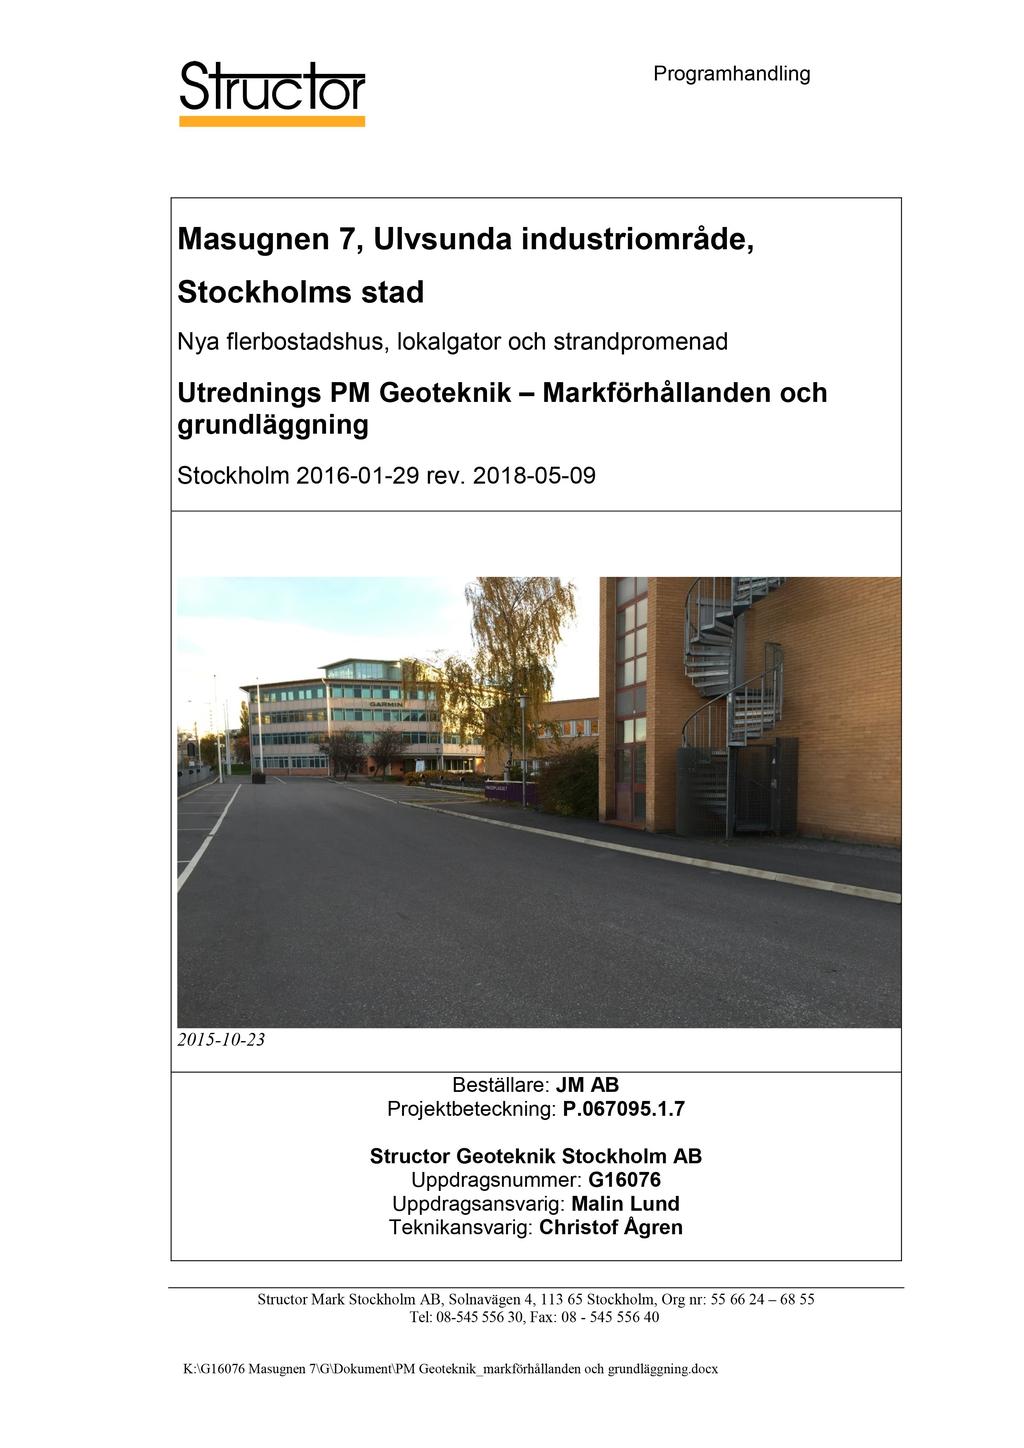 Programhandling Masugnen 7, Ulvsunda Markförhållanden och grundläggning Stockholm 201 